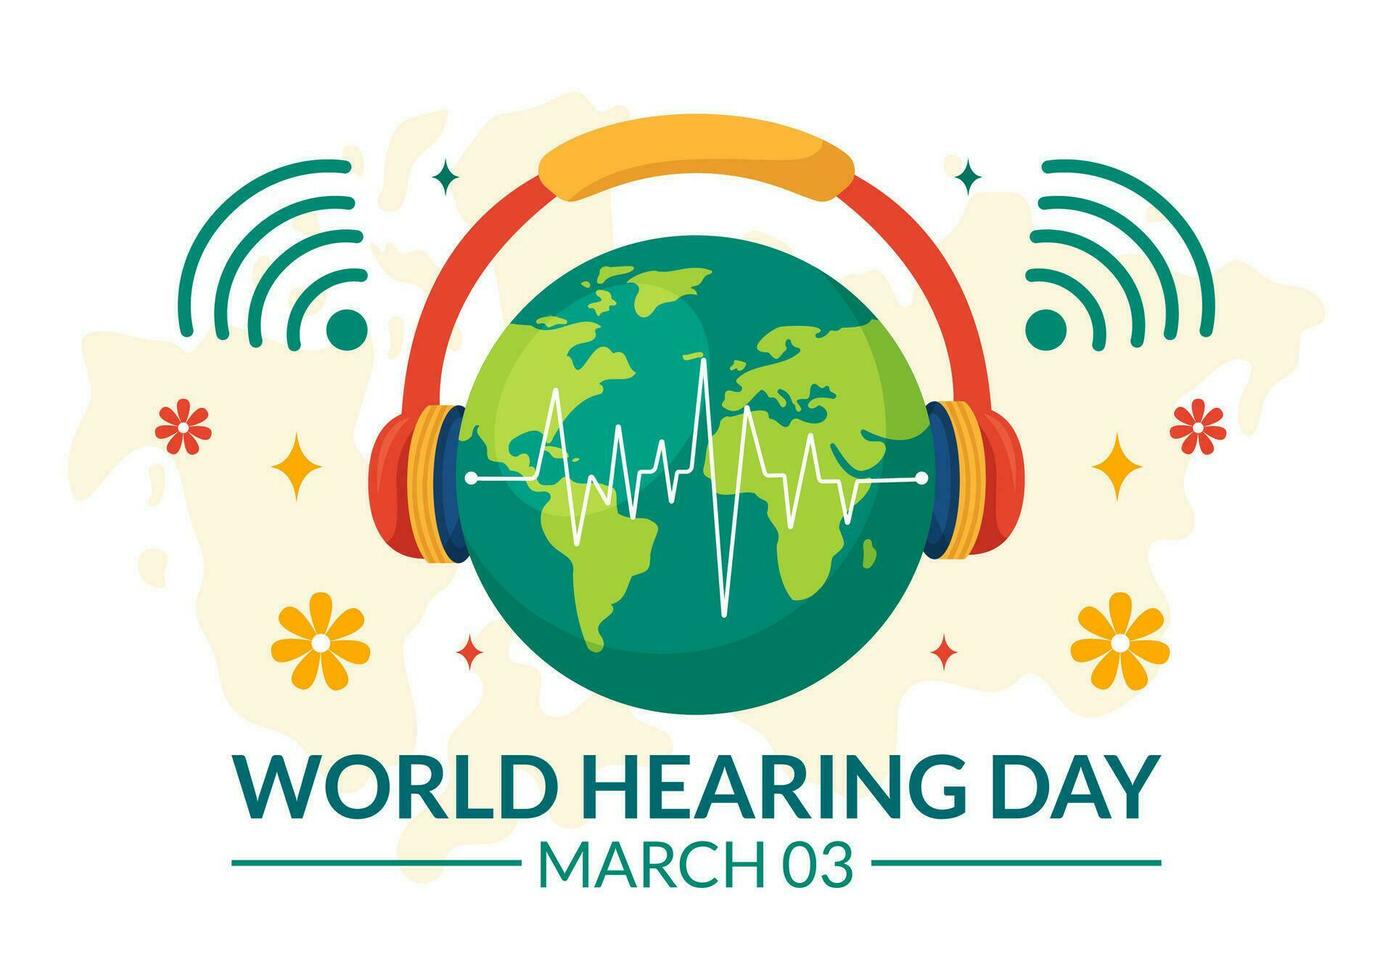 mundo escuchando día vector ilustración en 3 marzo a aumento conciencia en cómo a evitar sordera y oído tratamiento en plano cuidado de la salud antecedentes